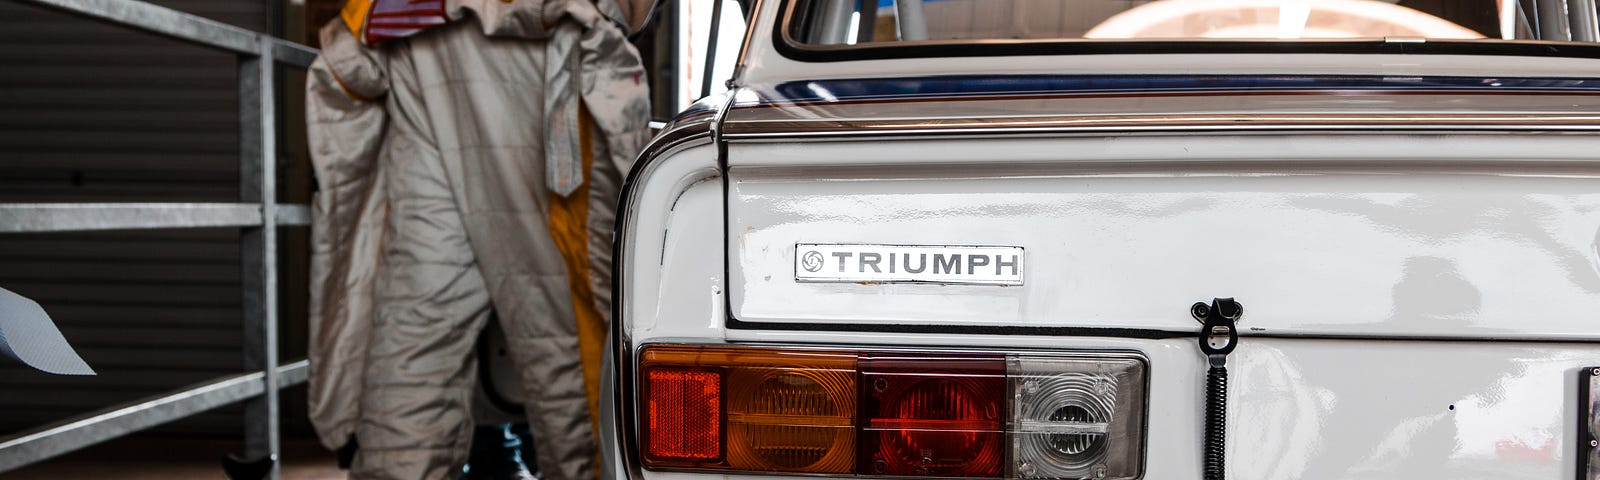 Triumph Classic car